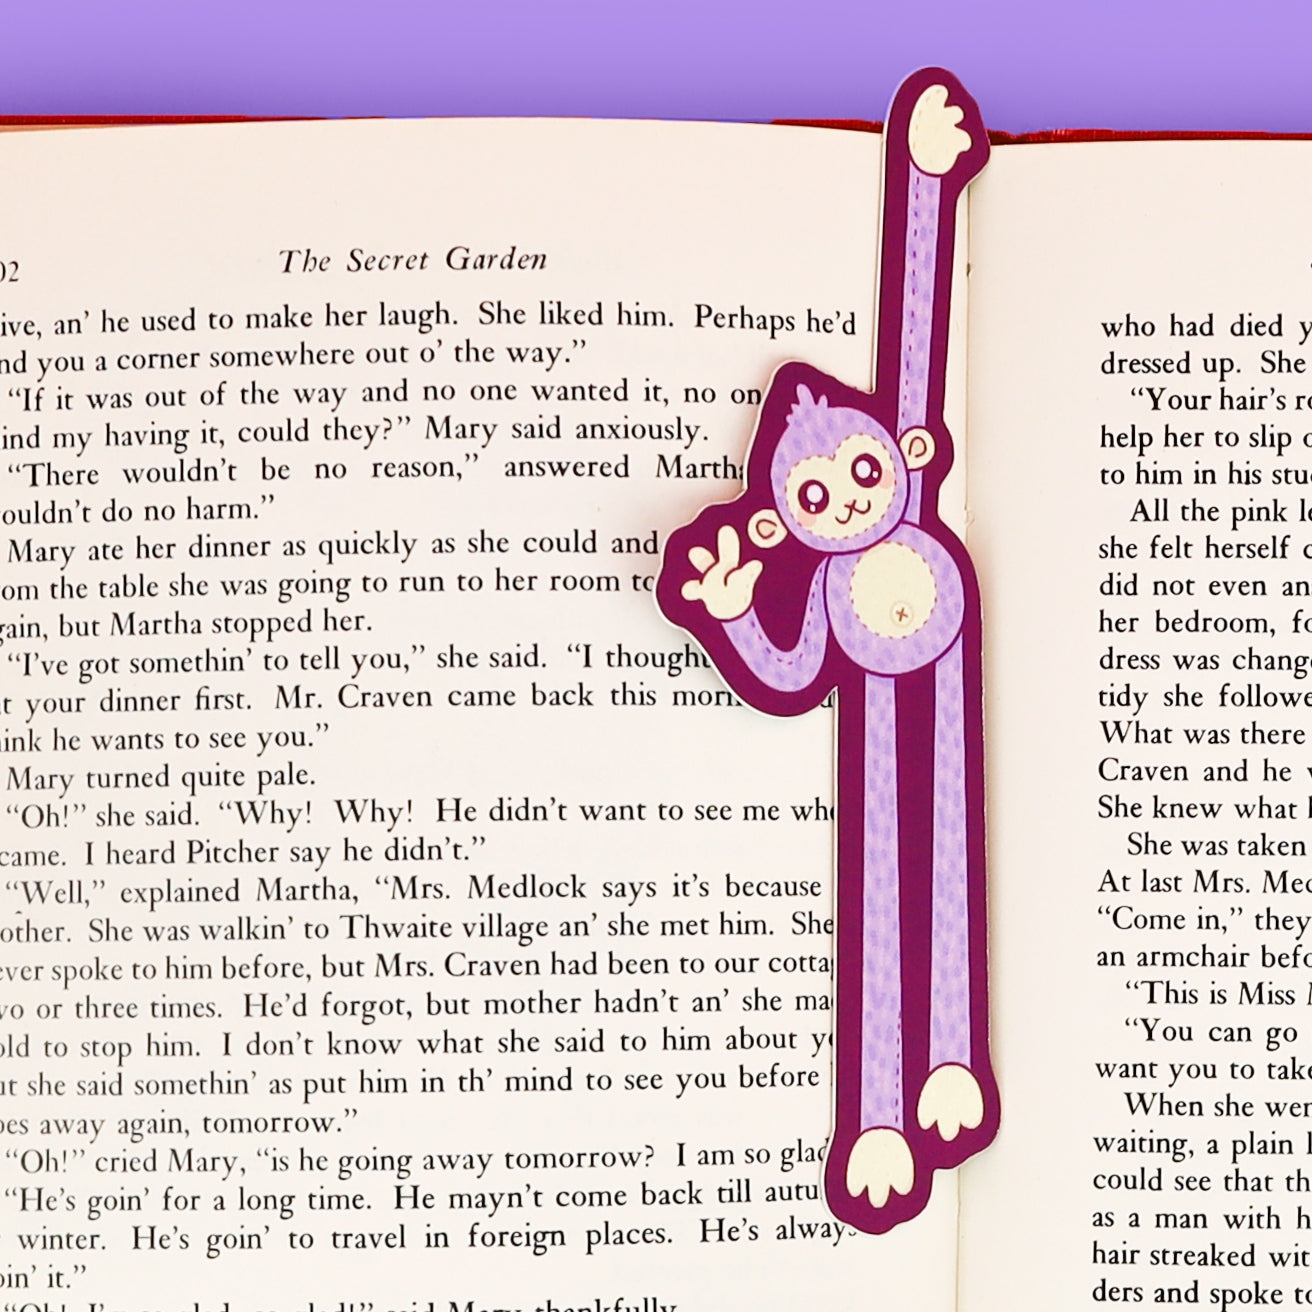 Monkey Plushie Bookmark